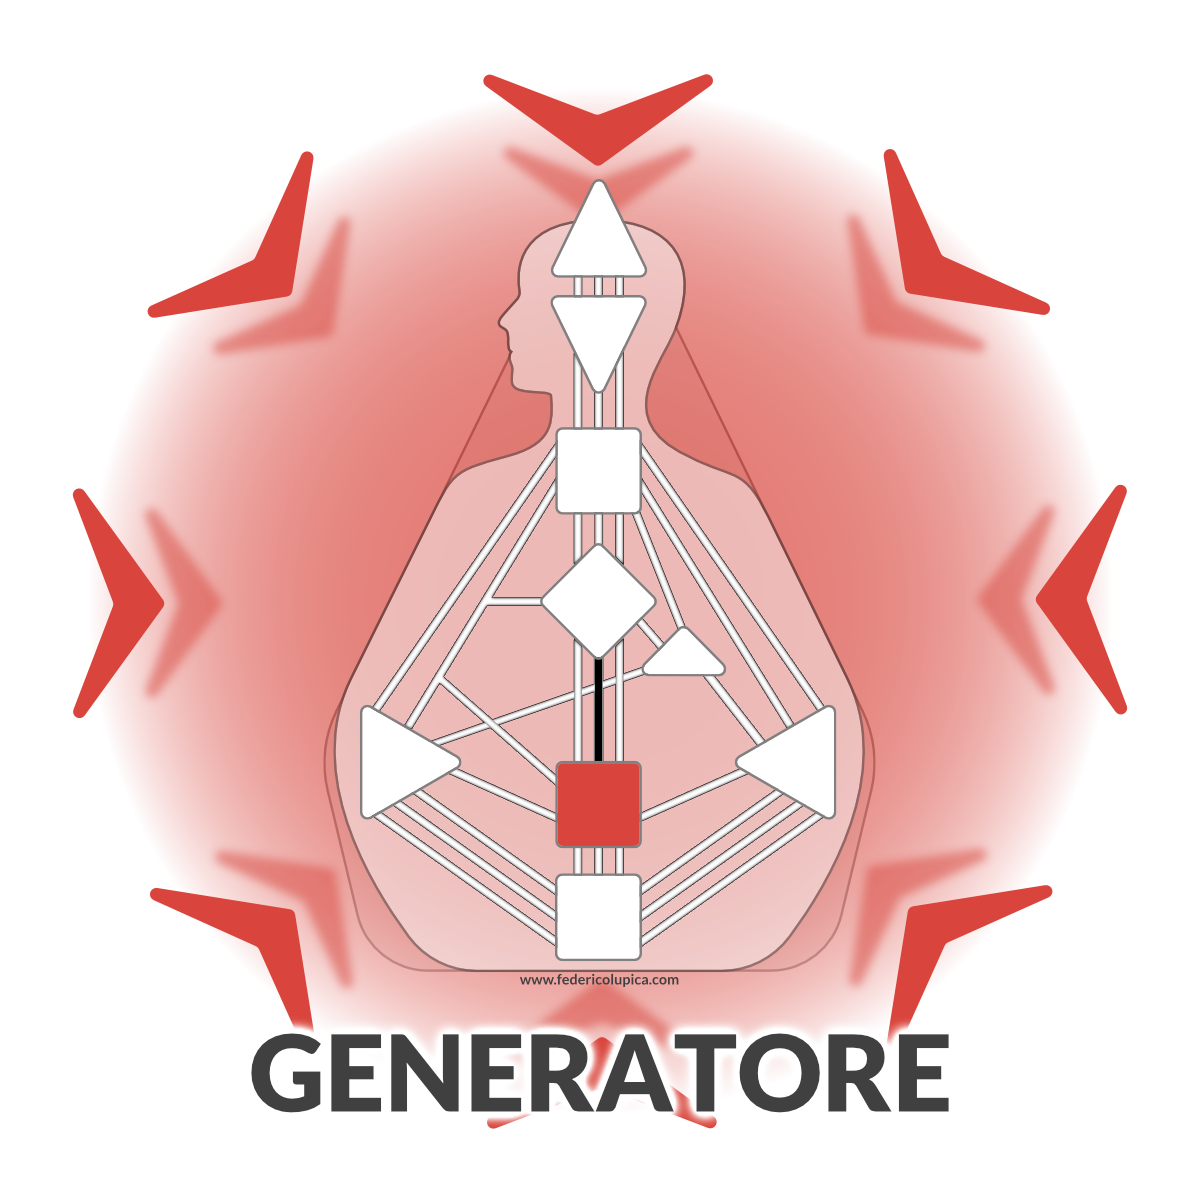 Generatore